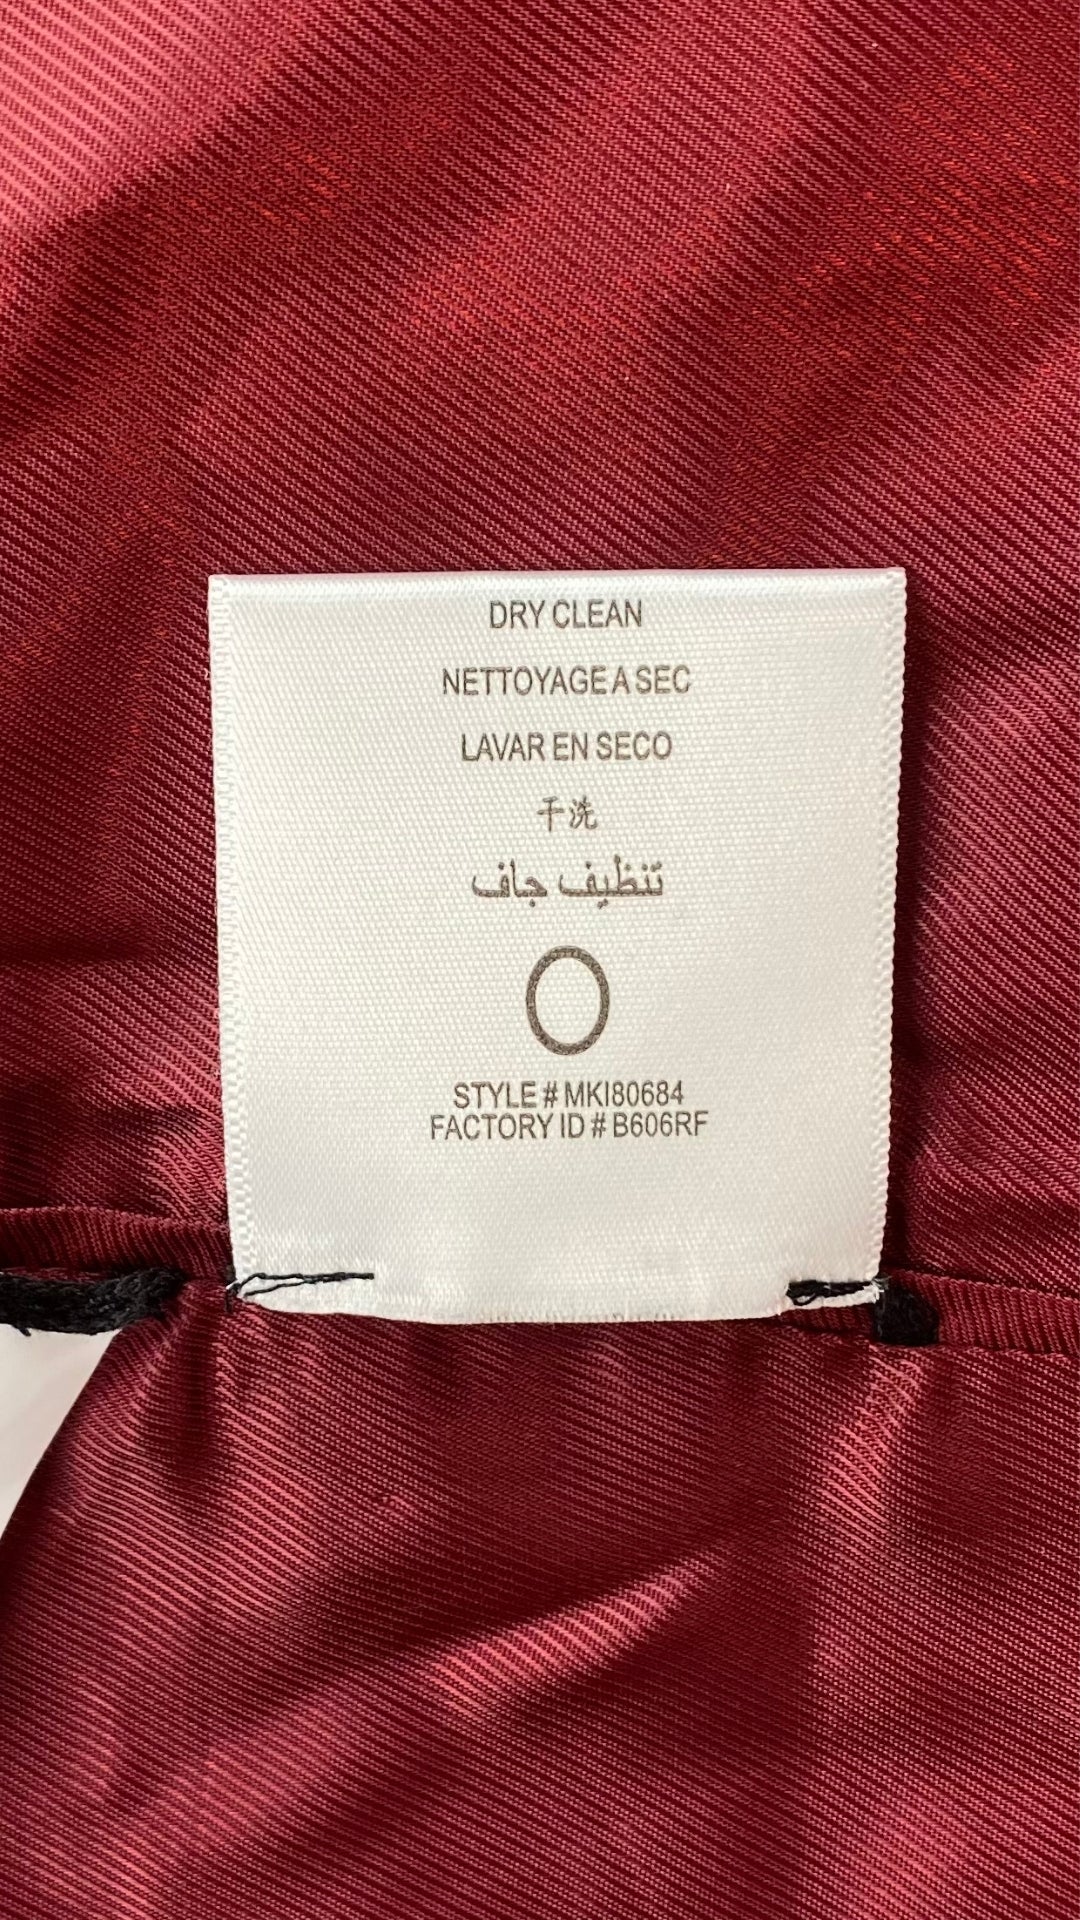 Manteau assez long en lainage rouge, manches ballons, BCBGMAXAZRIA, vue de l'étiquette d'entretien.